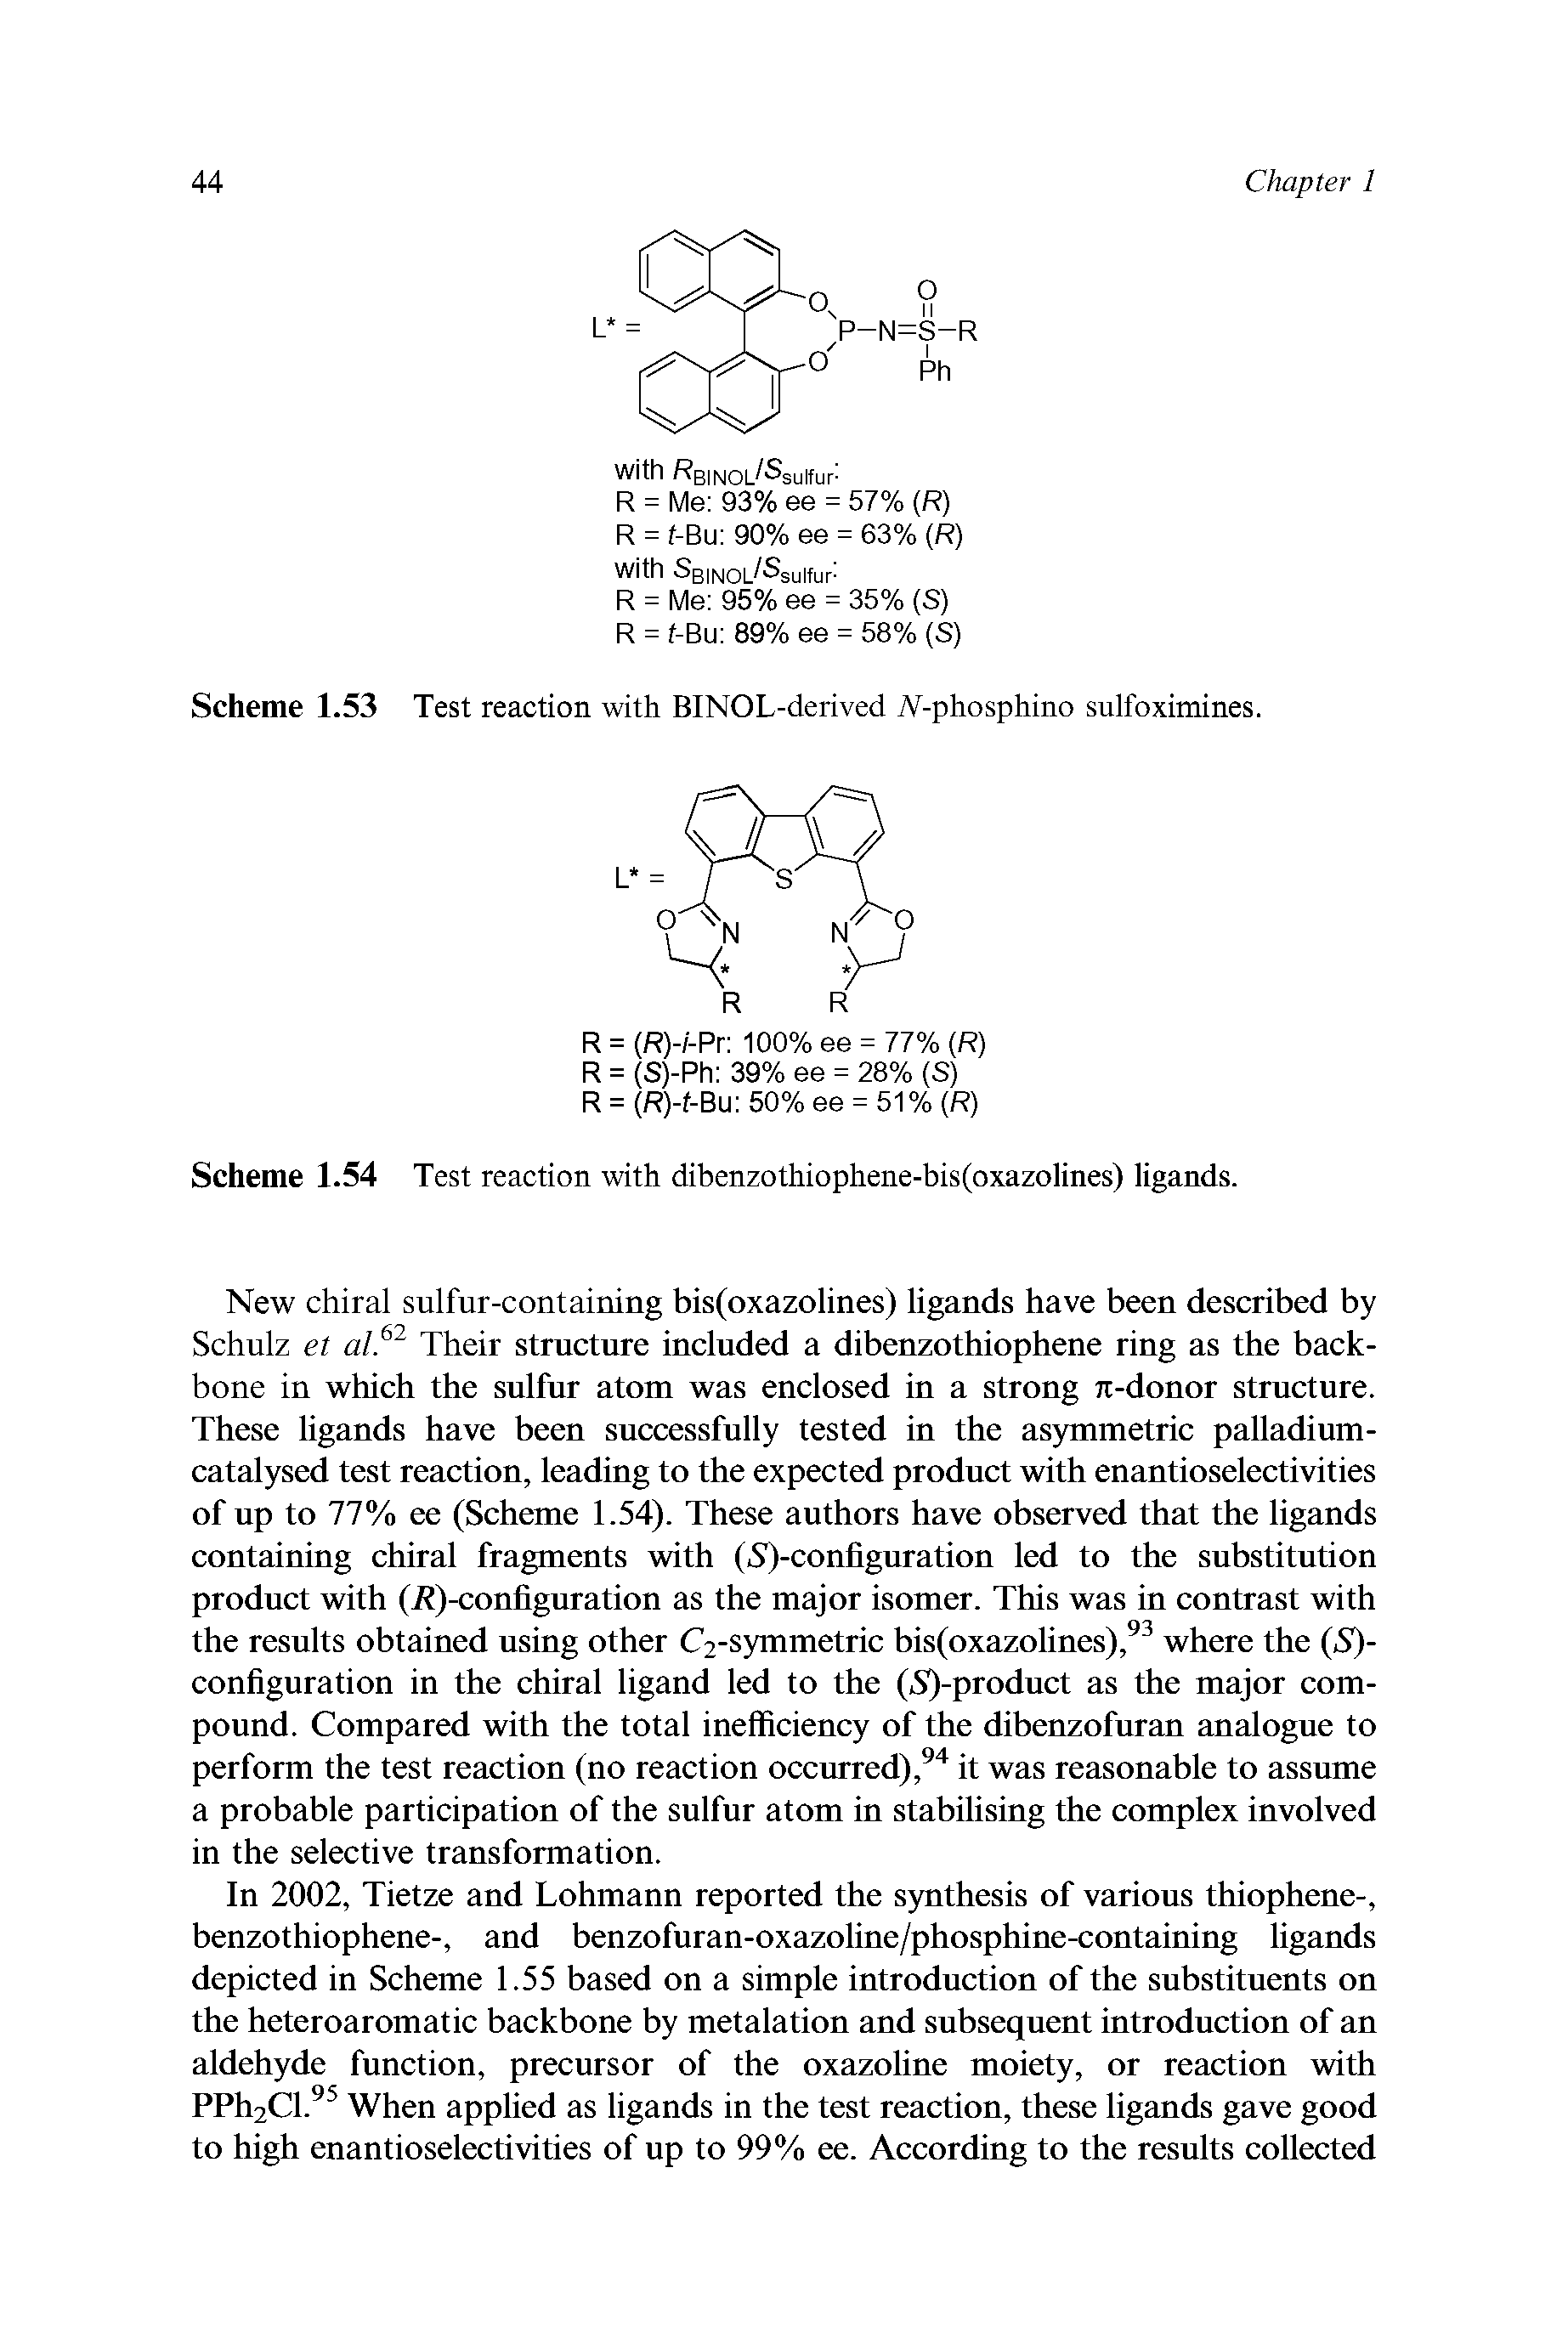 Scheme 1.54 Test reaction with dibenzothiophene-bis(oxazolines) ligands.